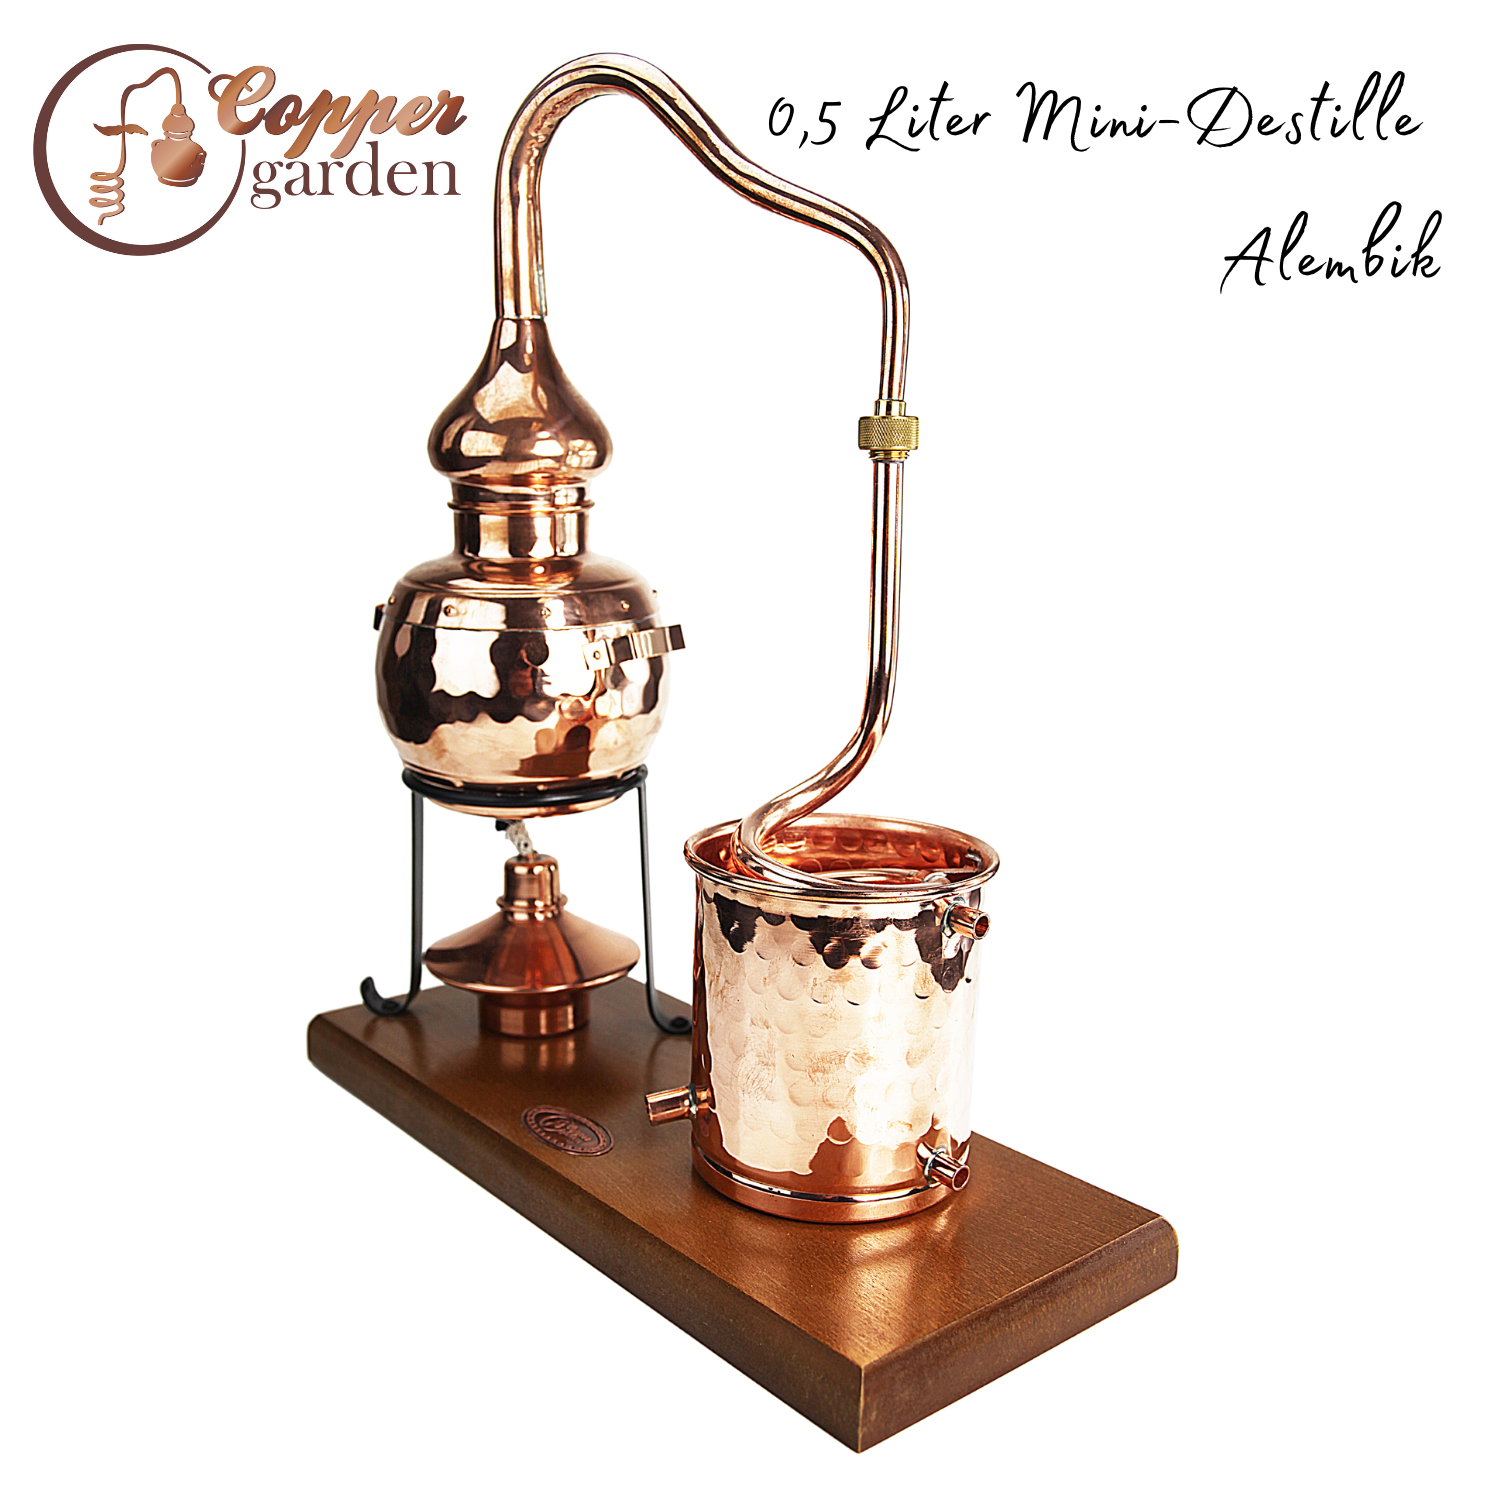 &quot; CopperGarden®&quot; Destillieranlage Alembik 0, 5 Liter | Spiritusbrenner